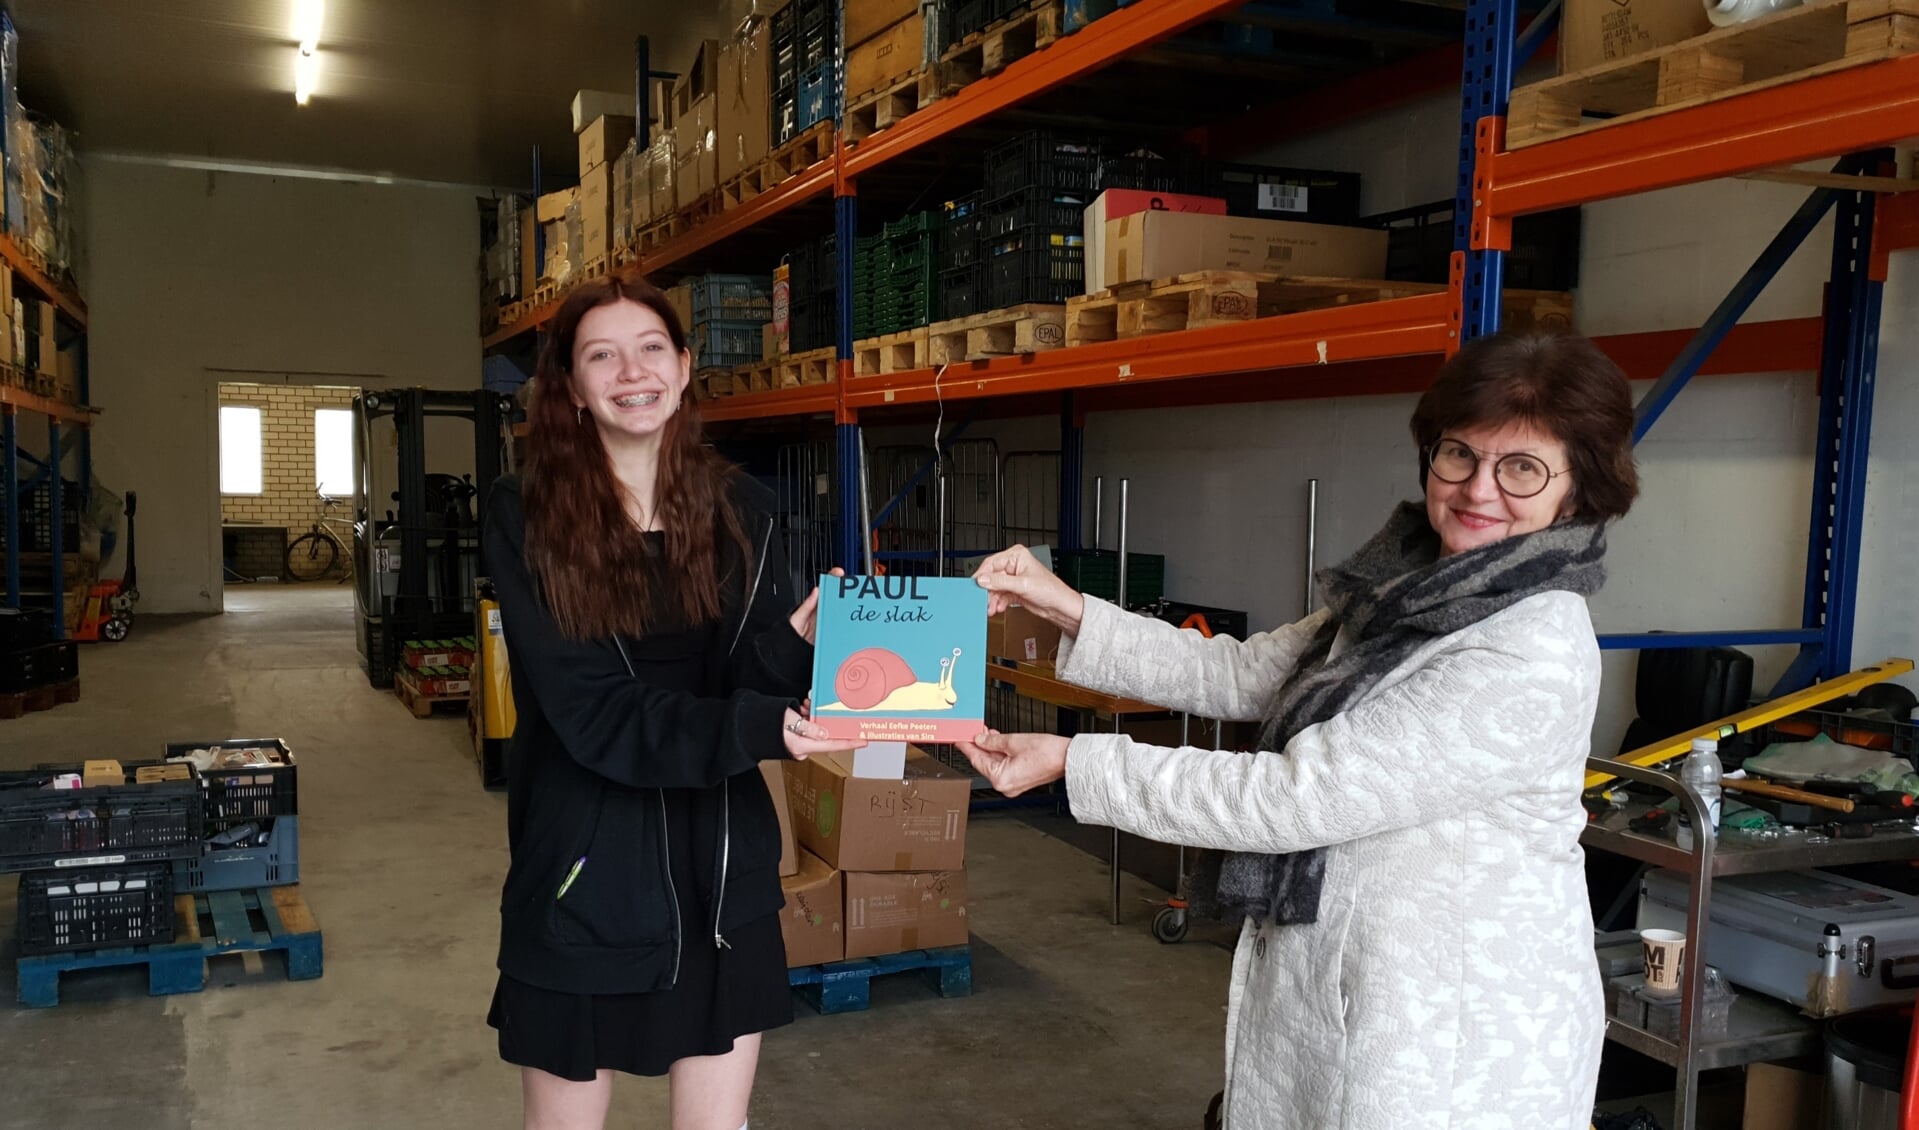 Sira overhandigt het eerste boek aan Régie Driessen van de Voedselbank.